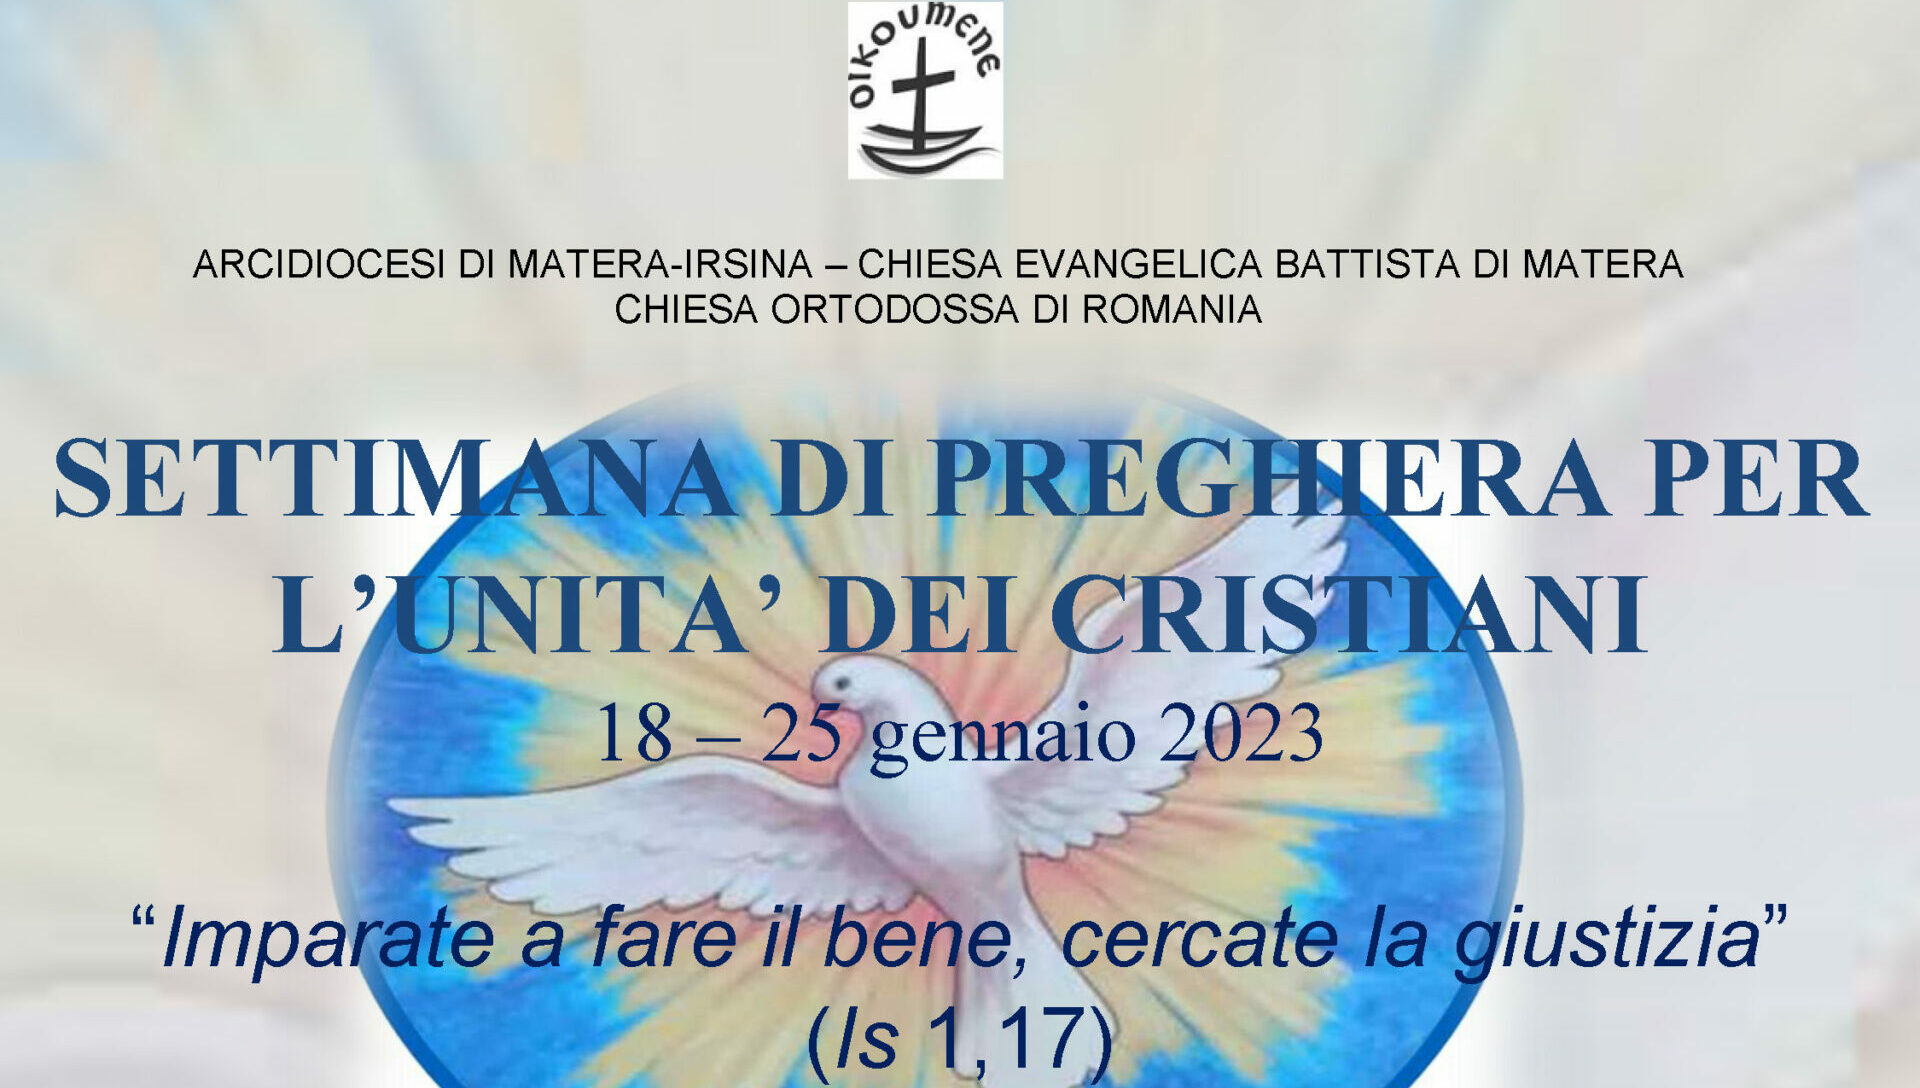 Diocesi di Matera-Irsina, dal 18 al 25 gennaio Settimana di preghiera per l’unità dei cristiani